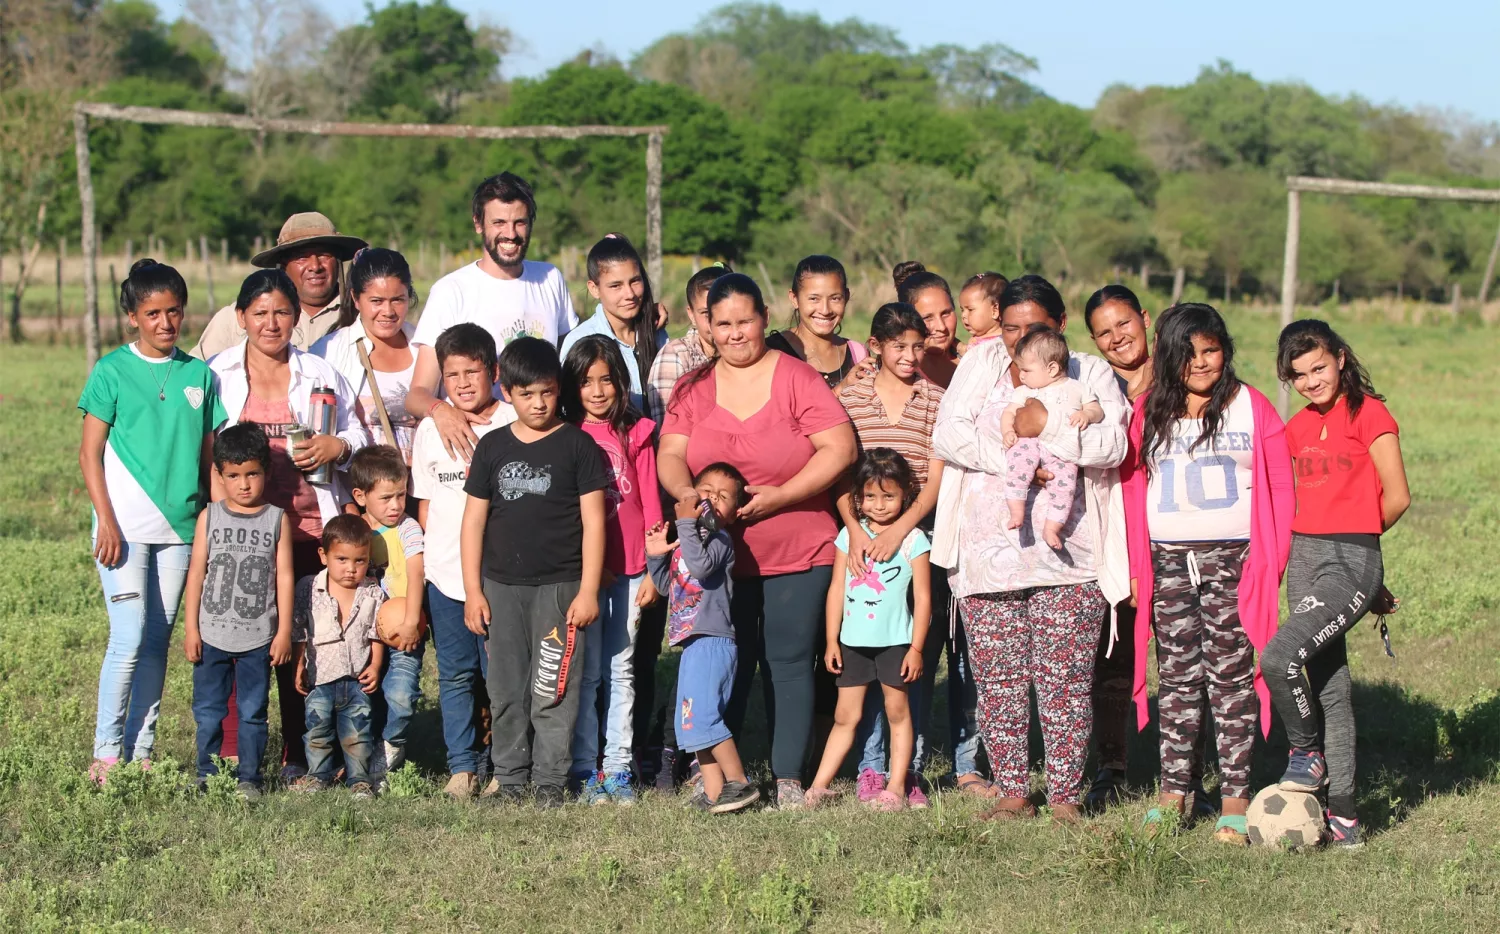 Capacitan a mujeres en distintos oficios y ayudan a familias del Chaco